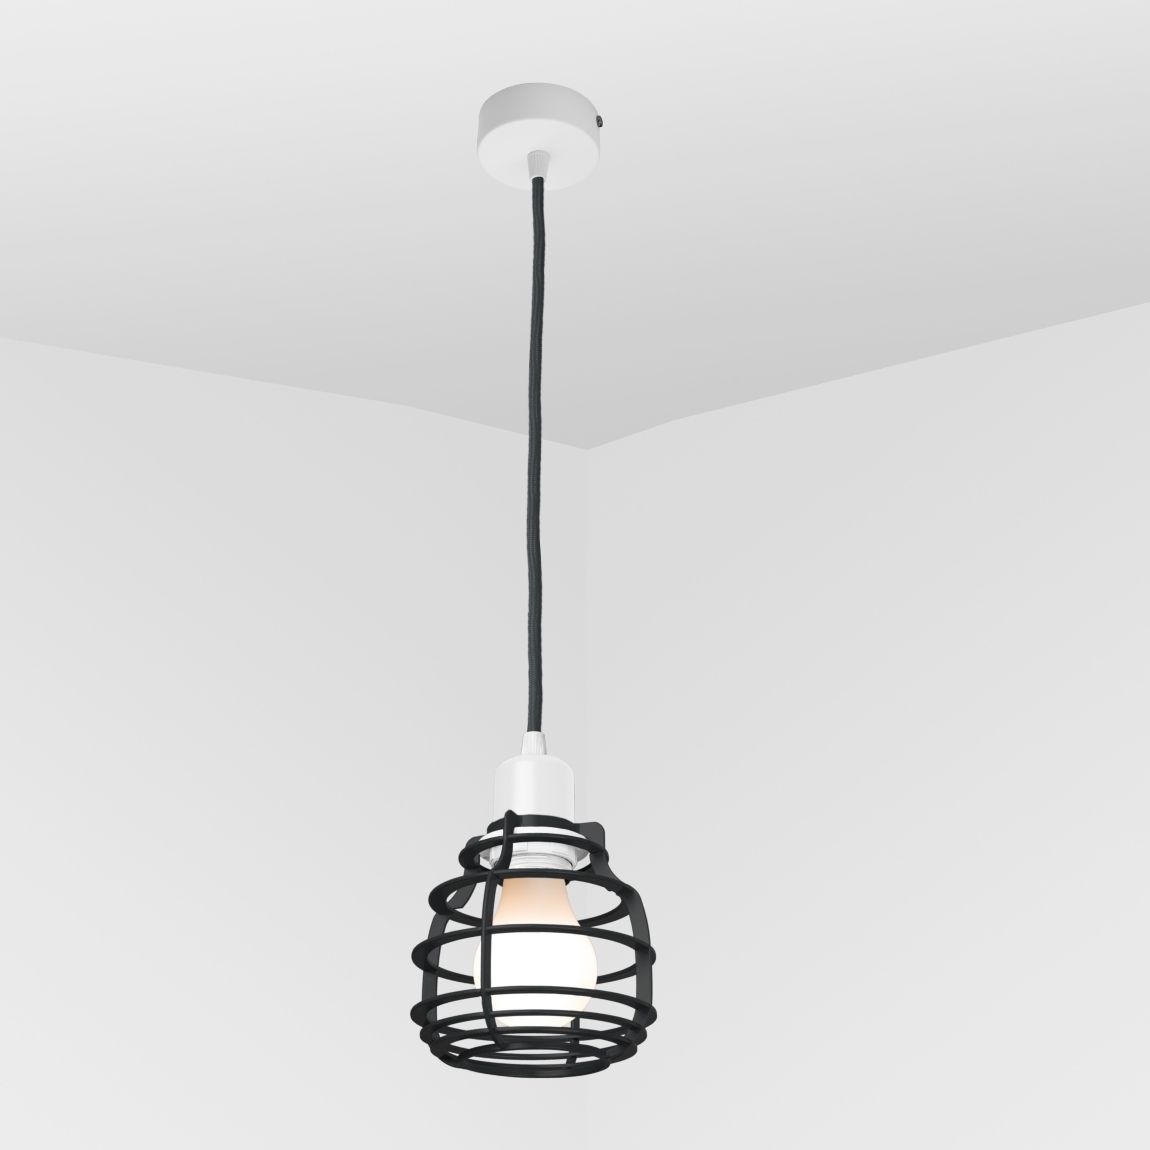 Suspension lamp Ara white / black